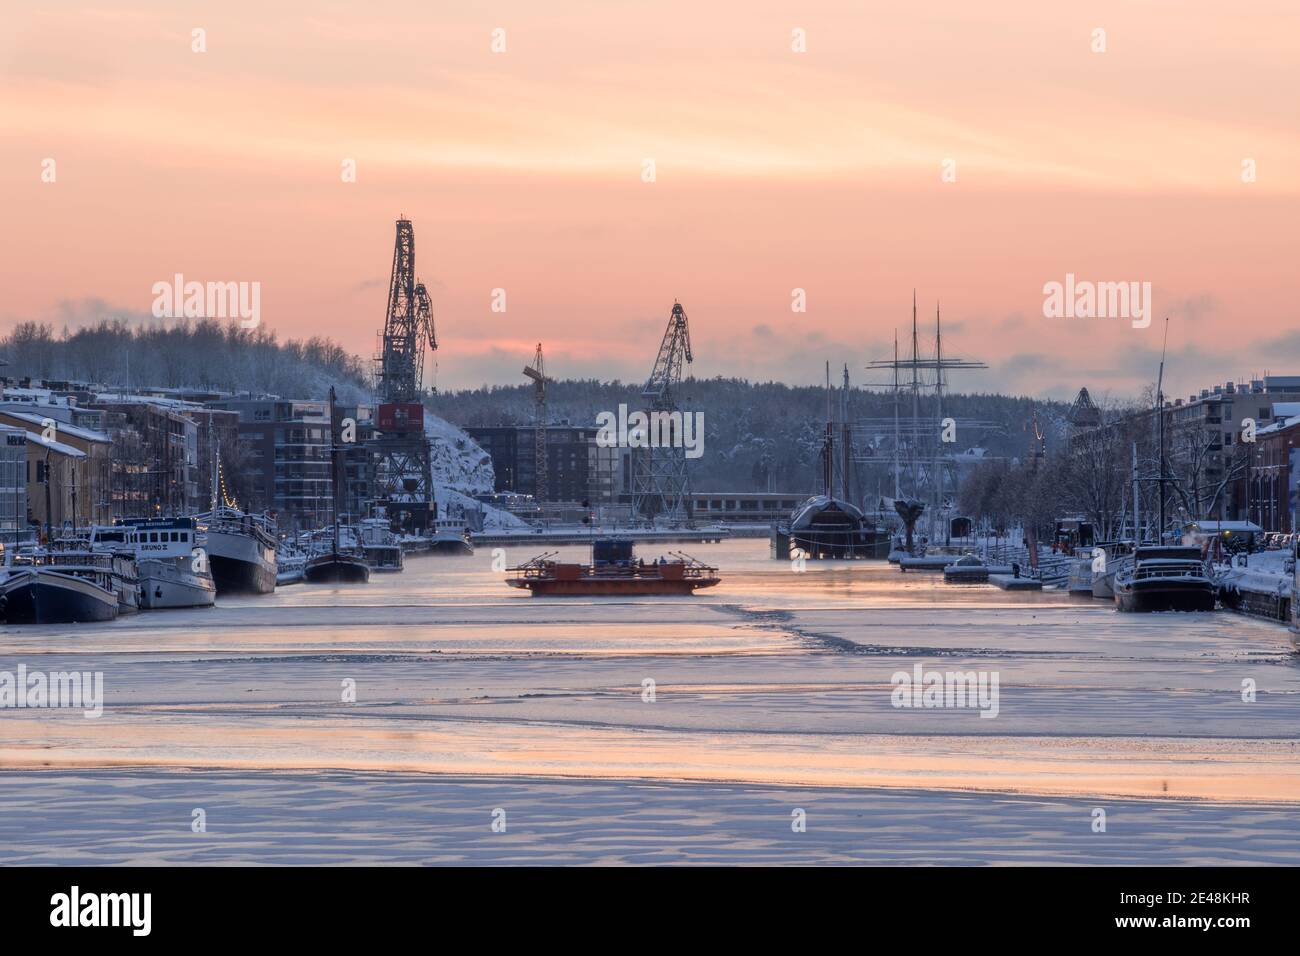 TURKU, FINLAND - Föri ferry on frozen Aurajoki river during sunset. Stock Photo